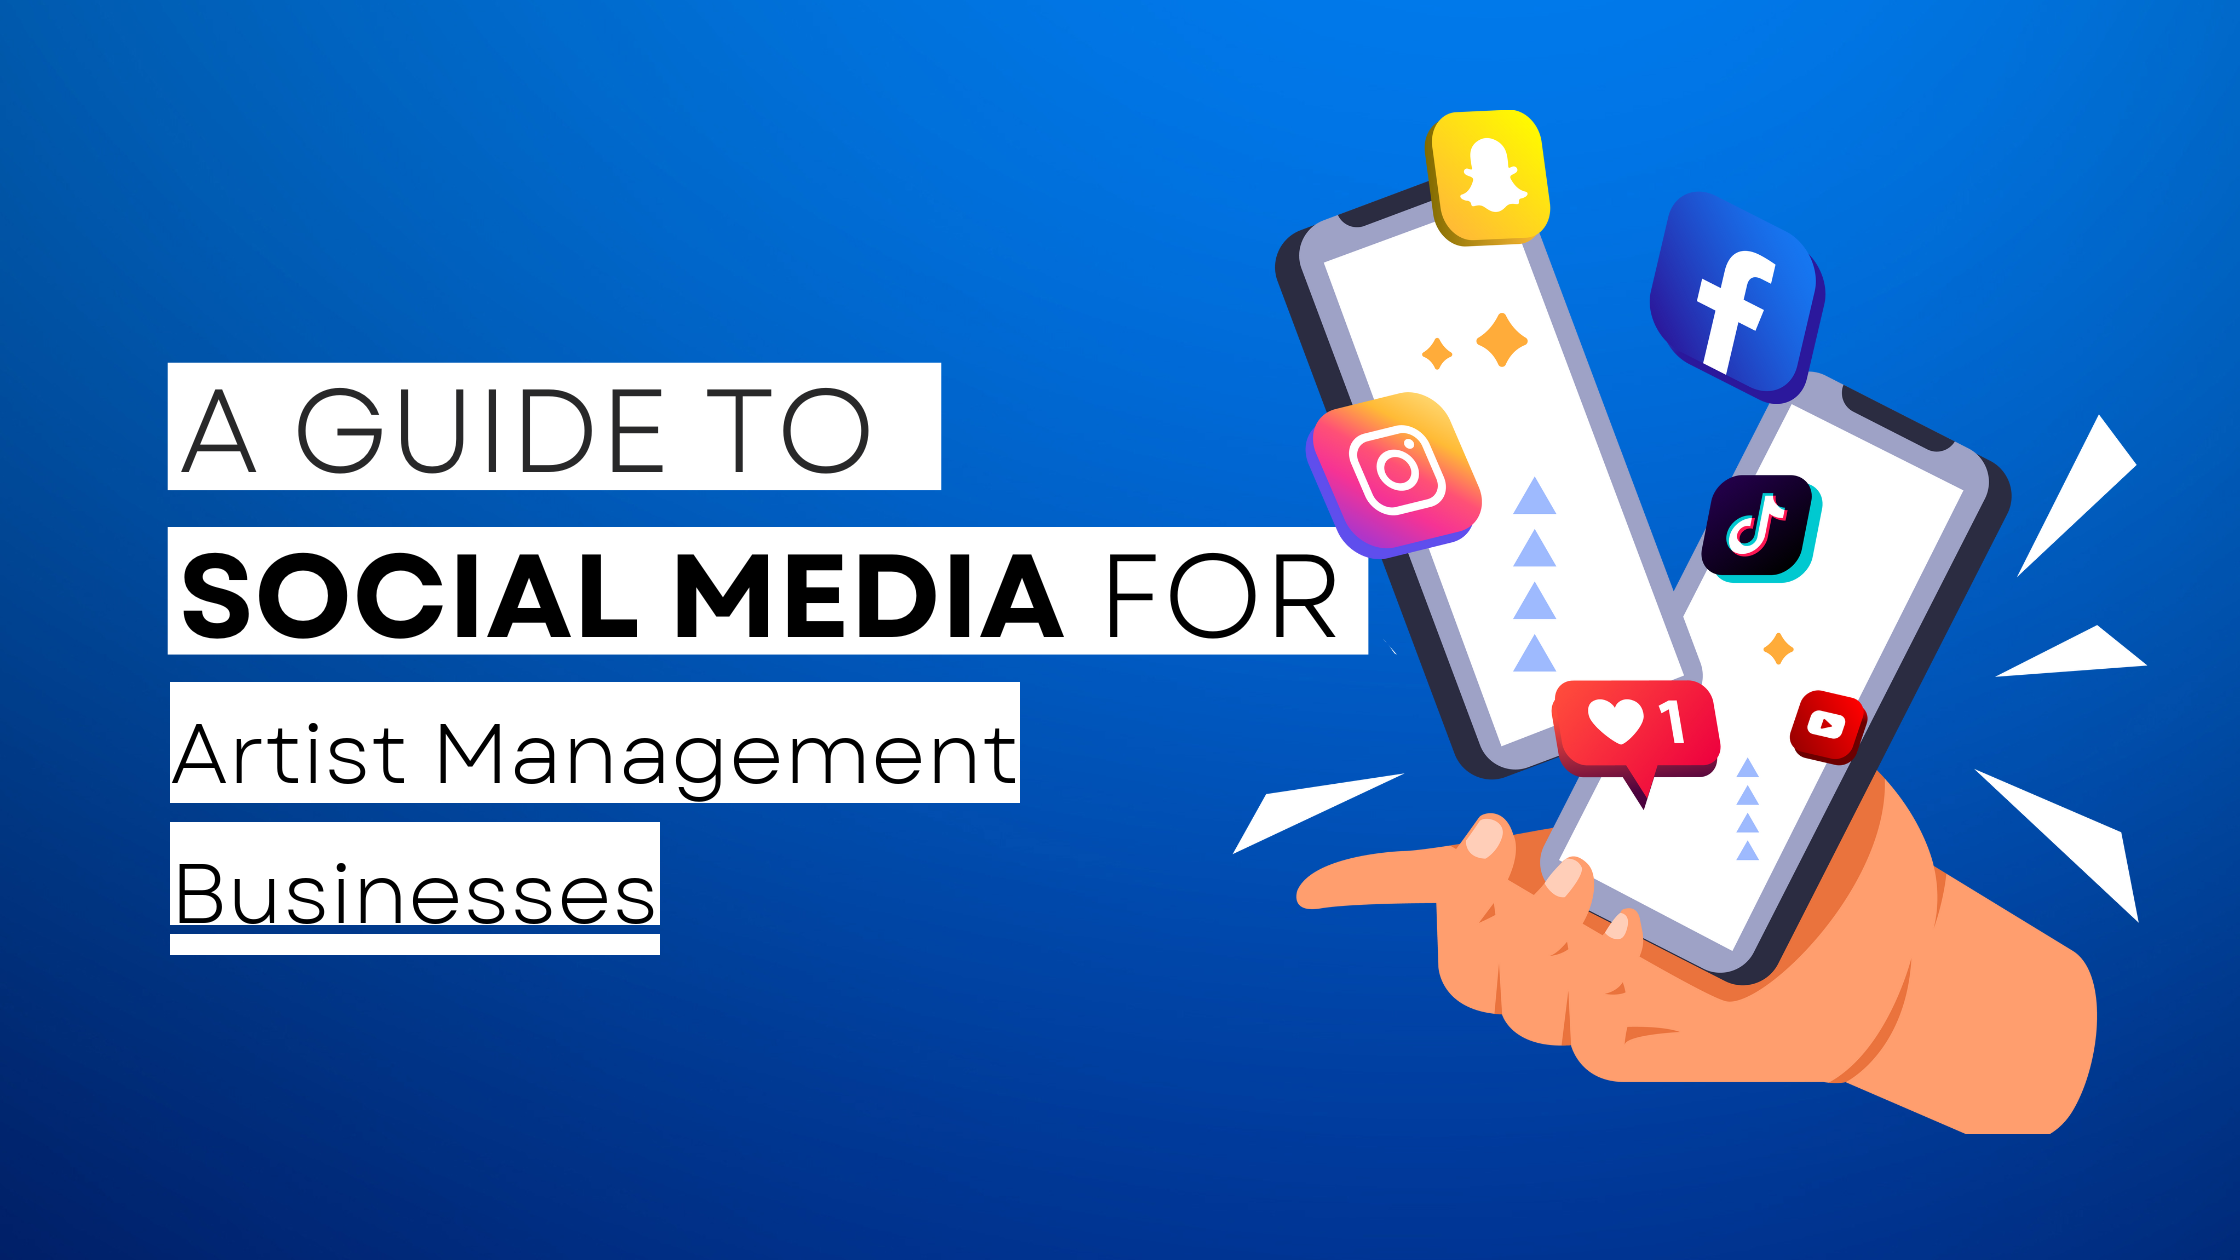 How to start Artist Management on social media